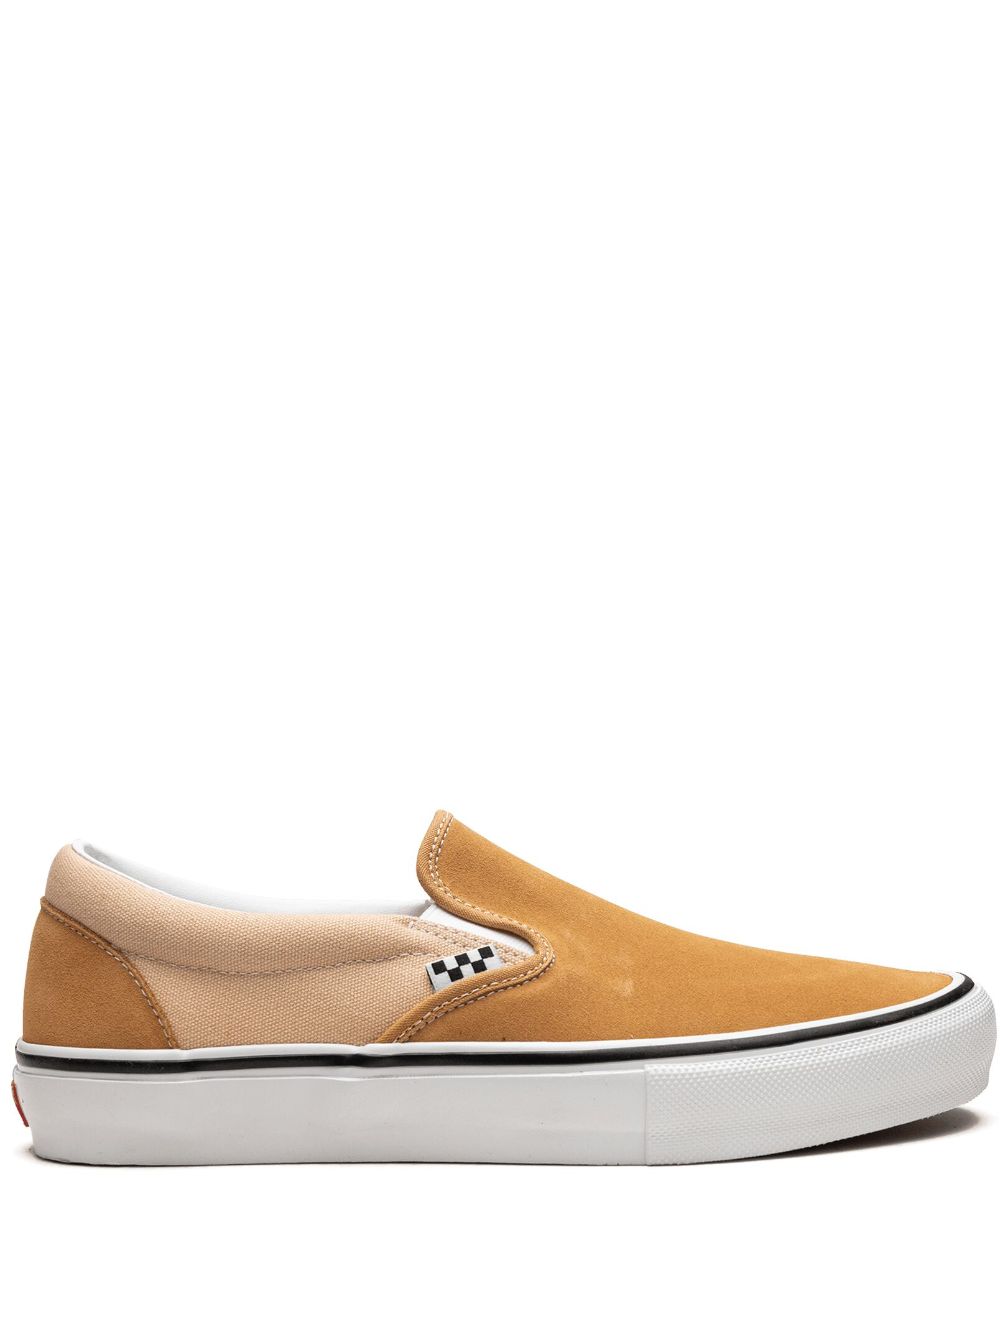 Vans Skate Slip-On sneakers - Orange von Vans